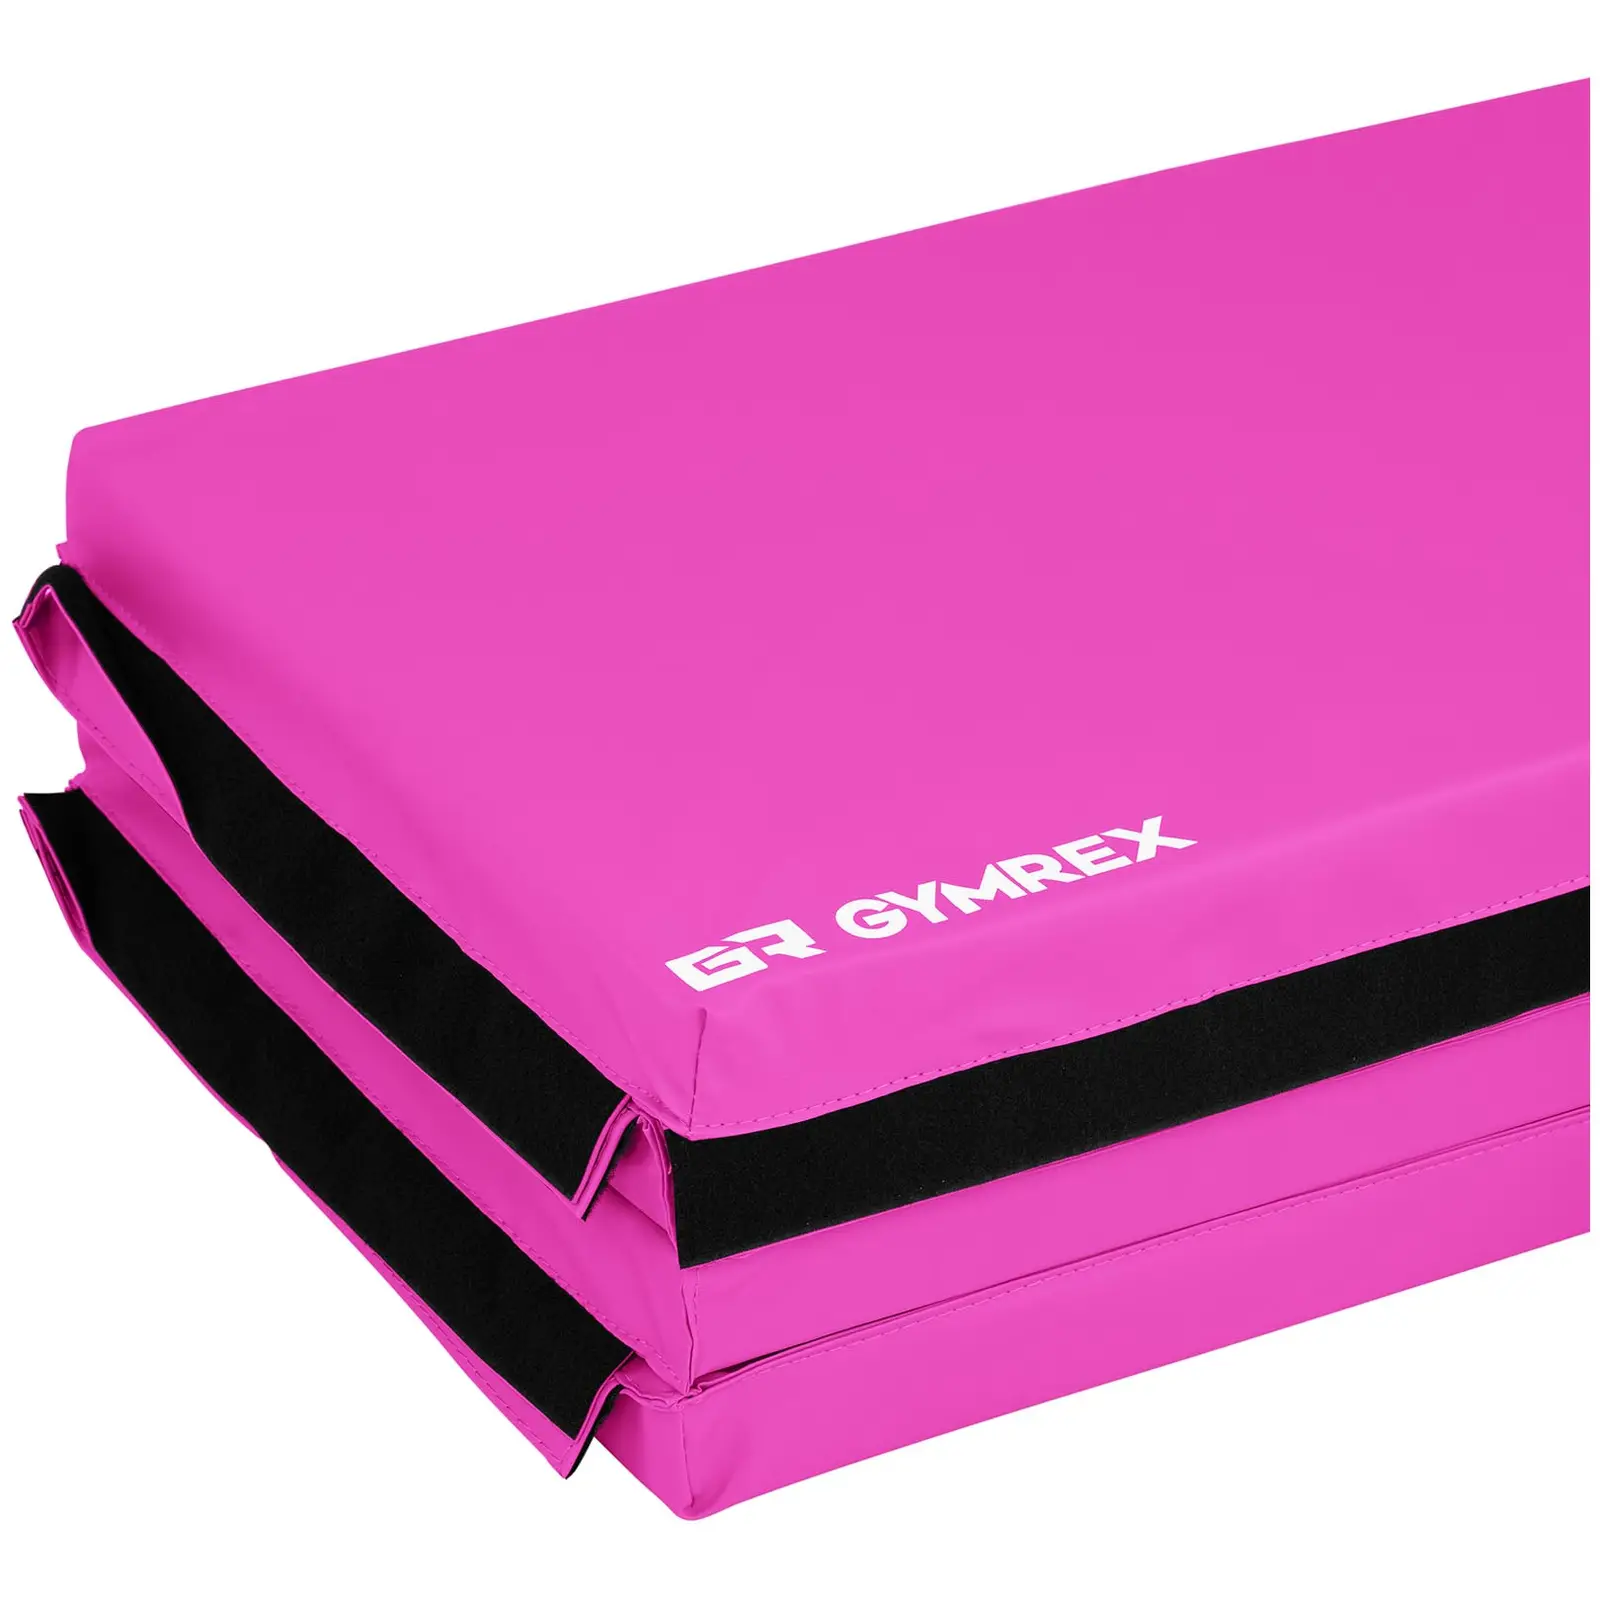 Weichbodenmatte - 200 x 100 x 5 cm - faltbar - Pink/Pink - belastbar bis 170kg